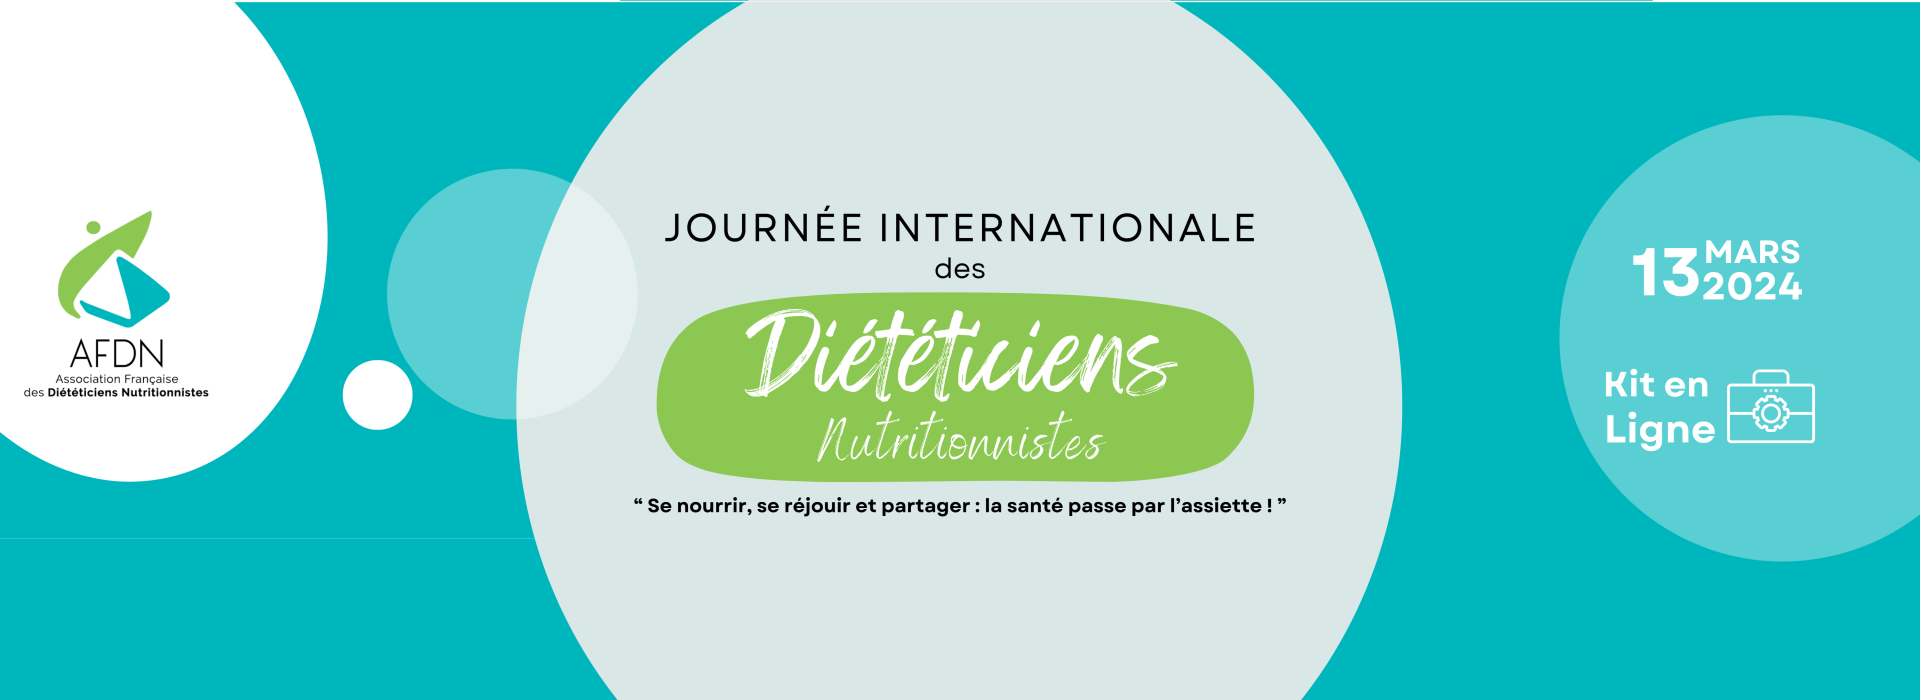 Journée Internationale des Diététiciens Nutritionnistes - 13 mars 2024